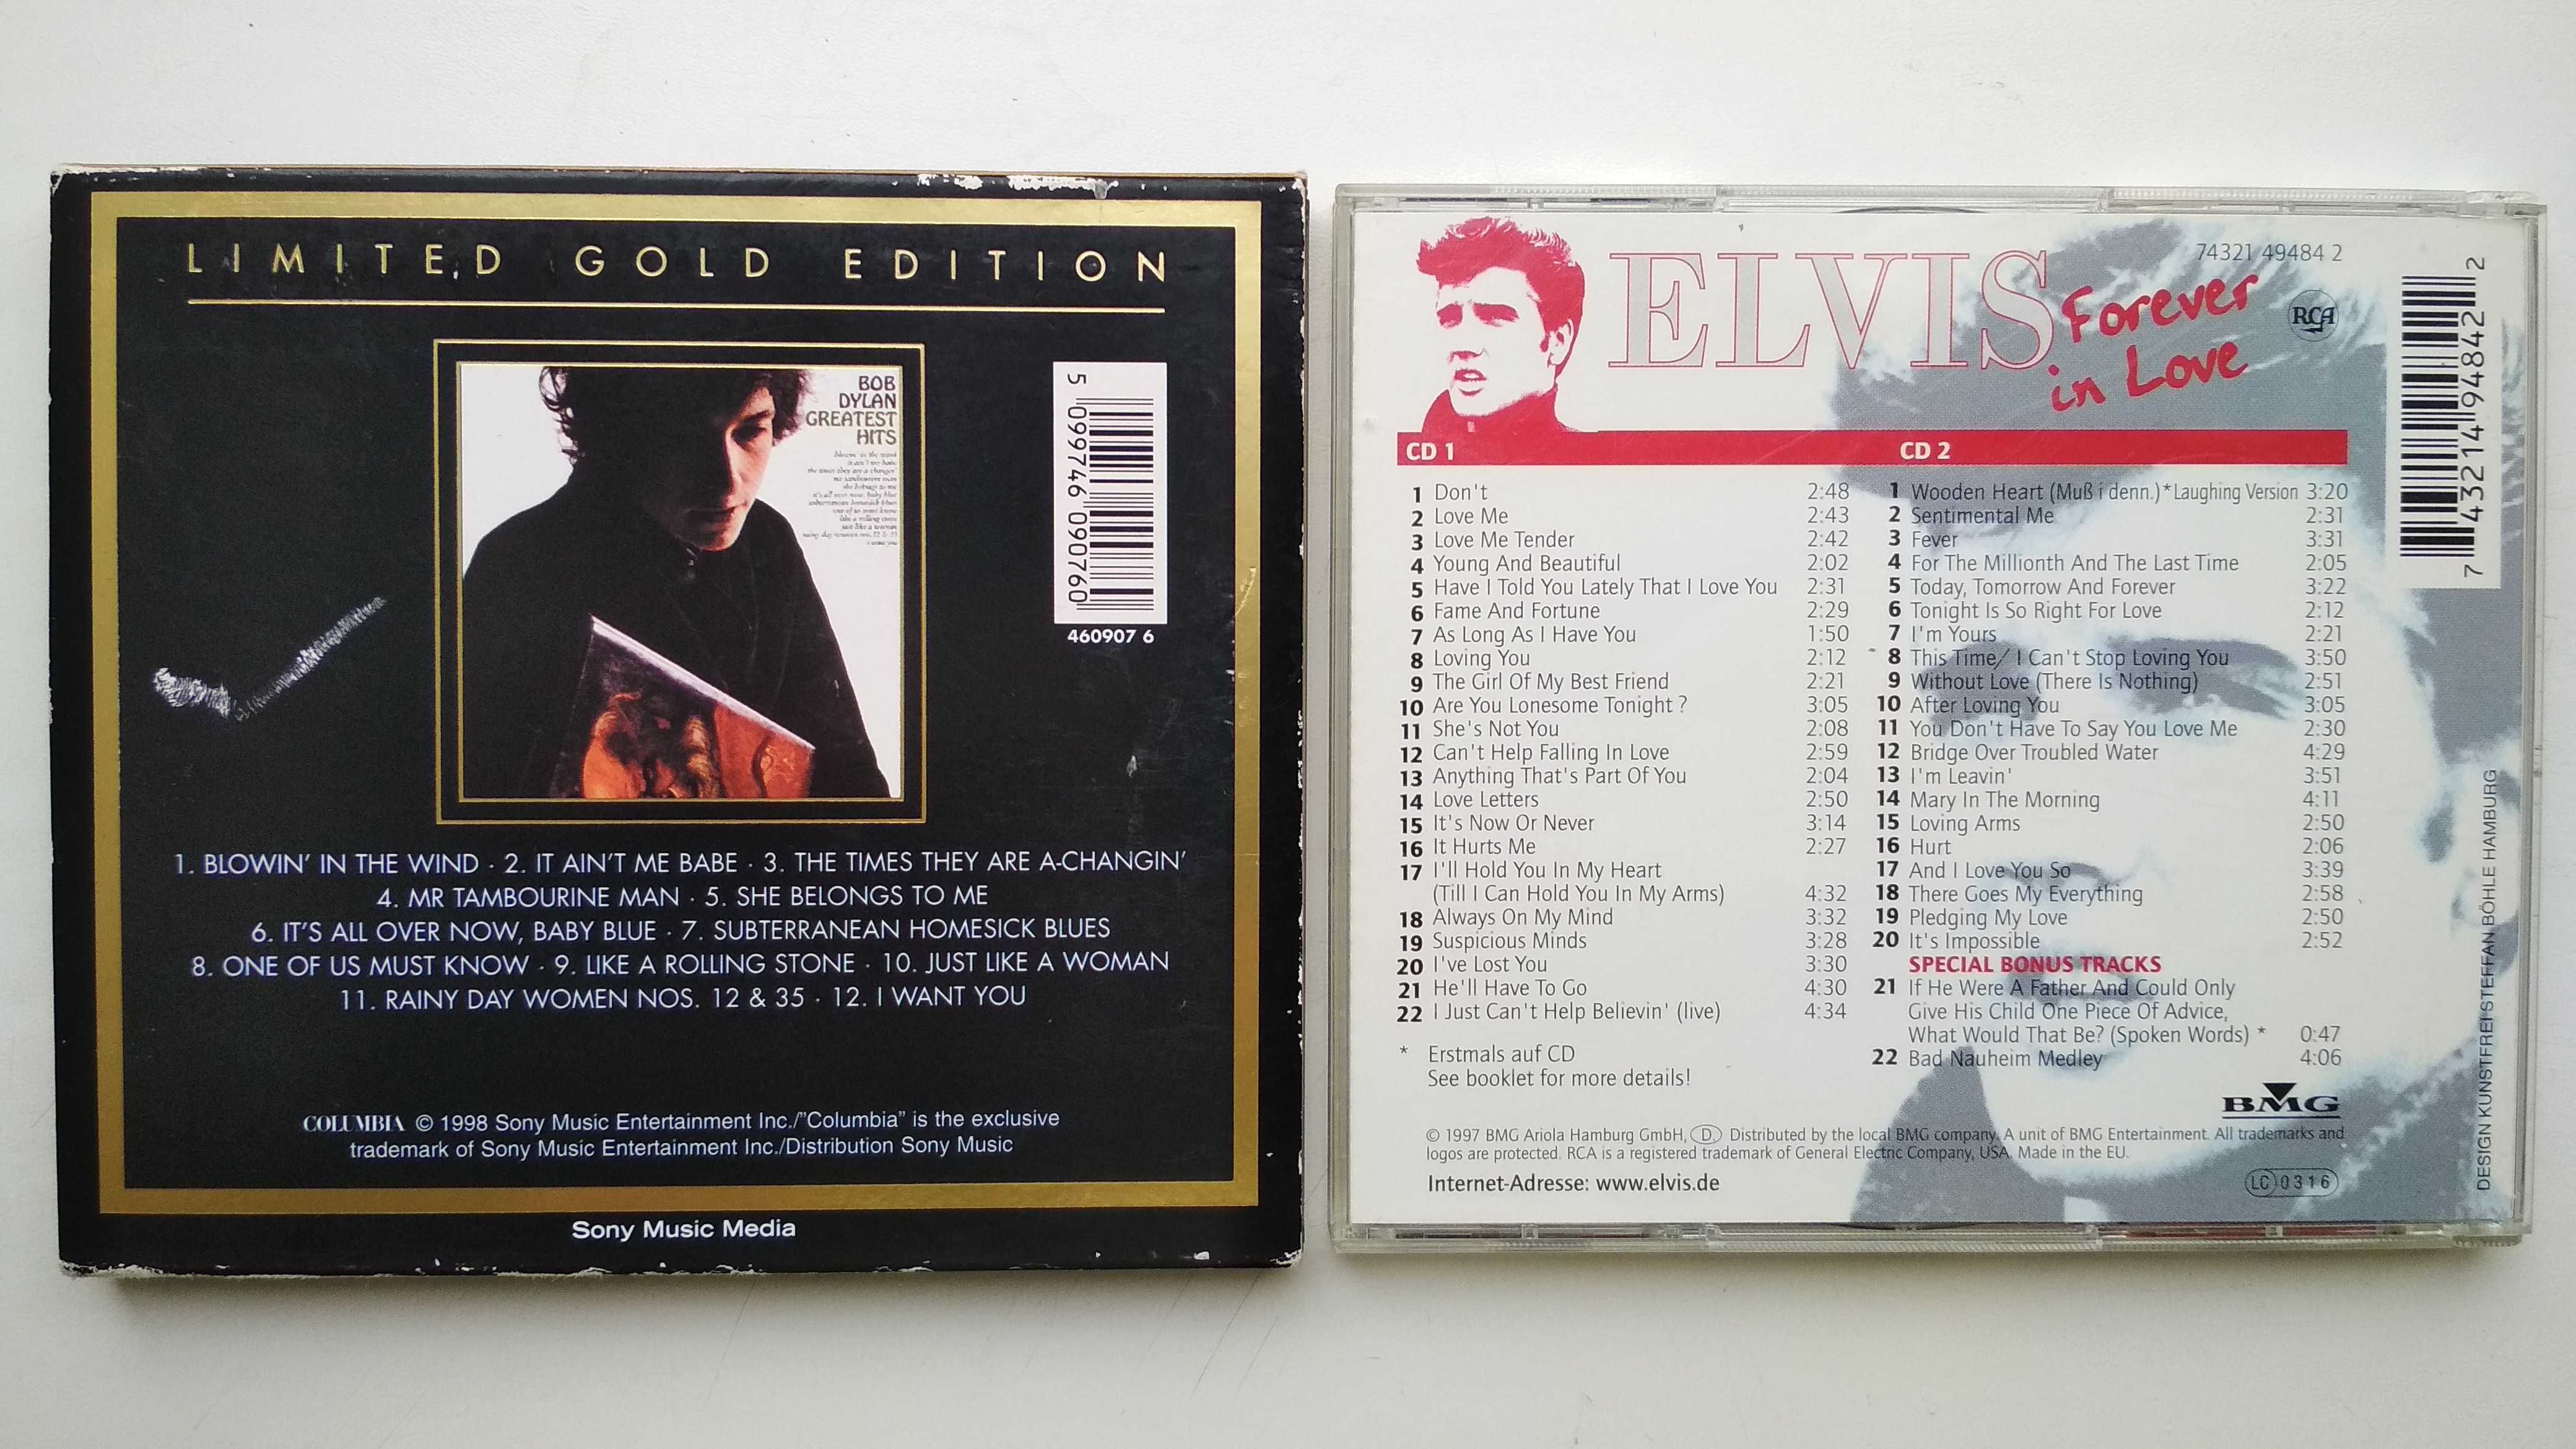 Elvis Presley Forever in Love 2CD Bob Dylan Best of Best Gold limited